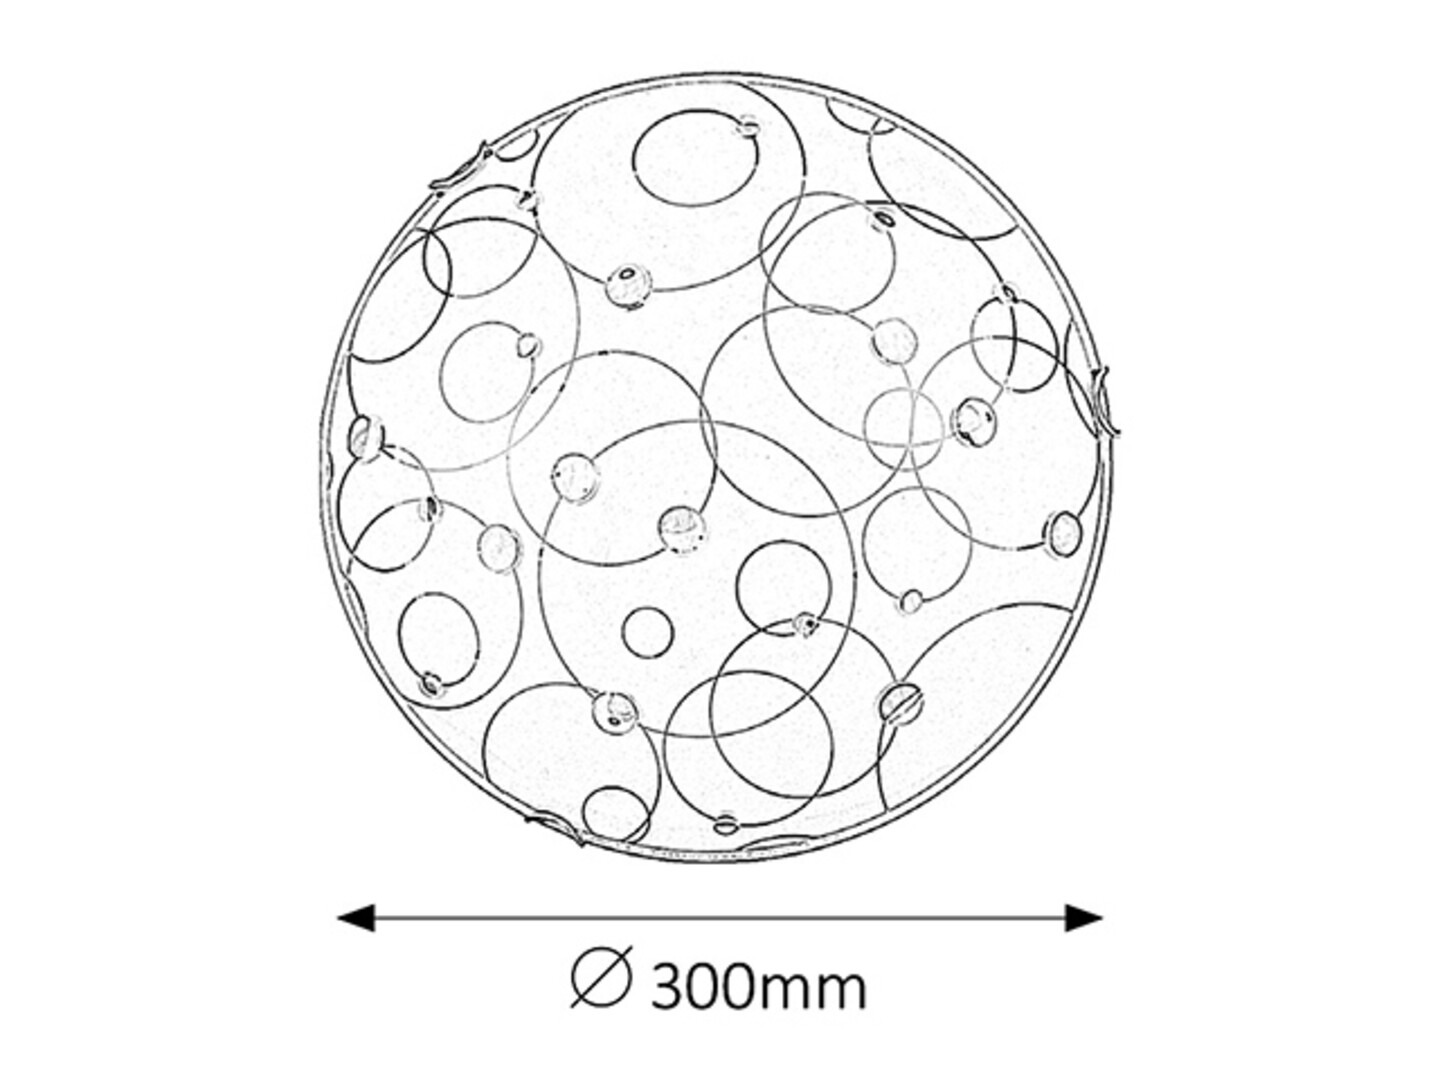 Deckenleuchte 1 Spot Jolly 1861, E27, Metall, weiß, rund, Standard, ø300mm